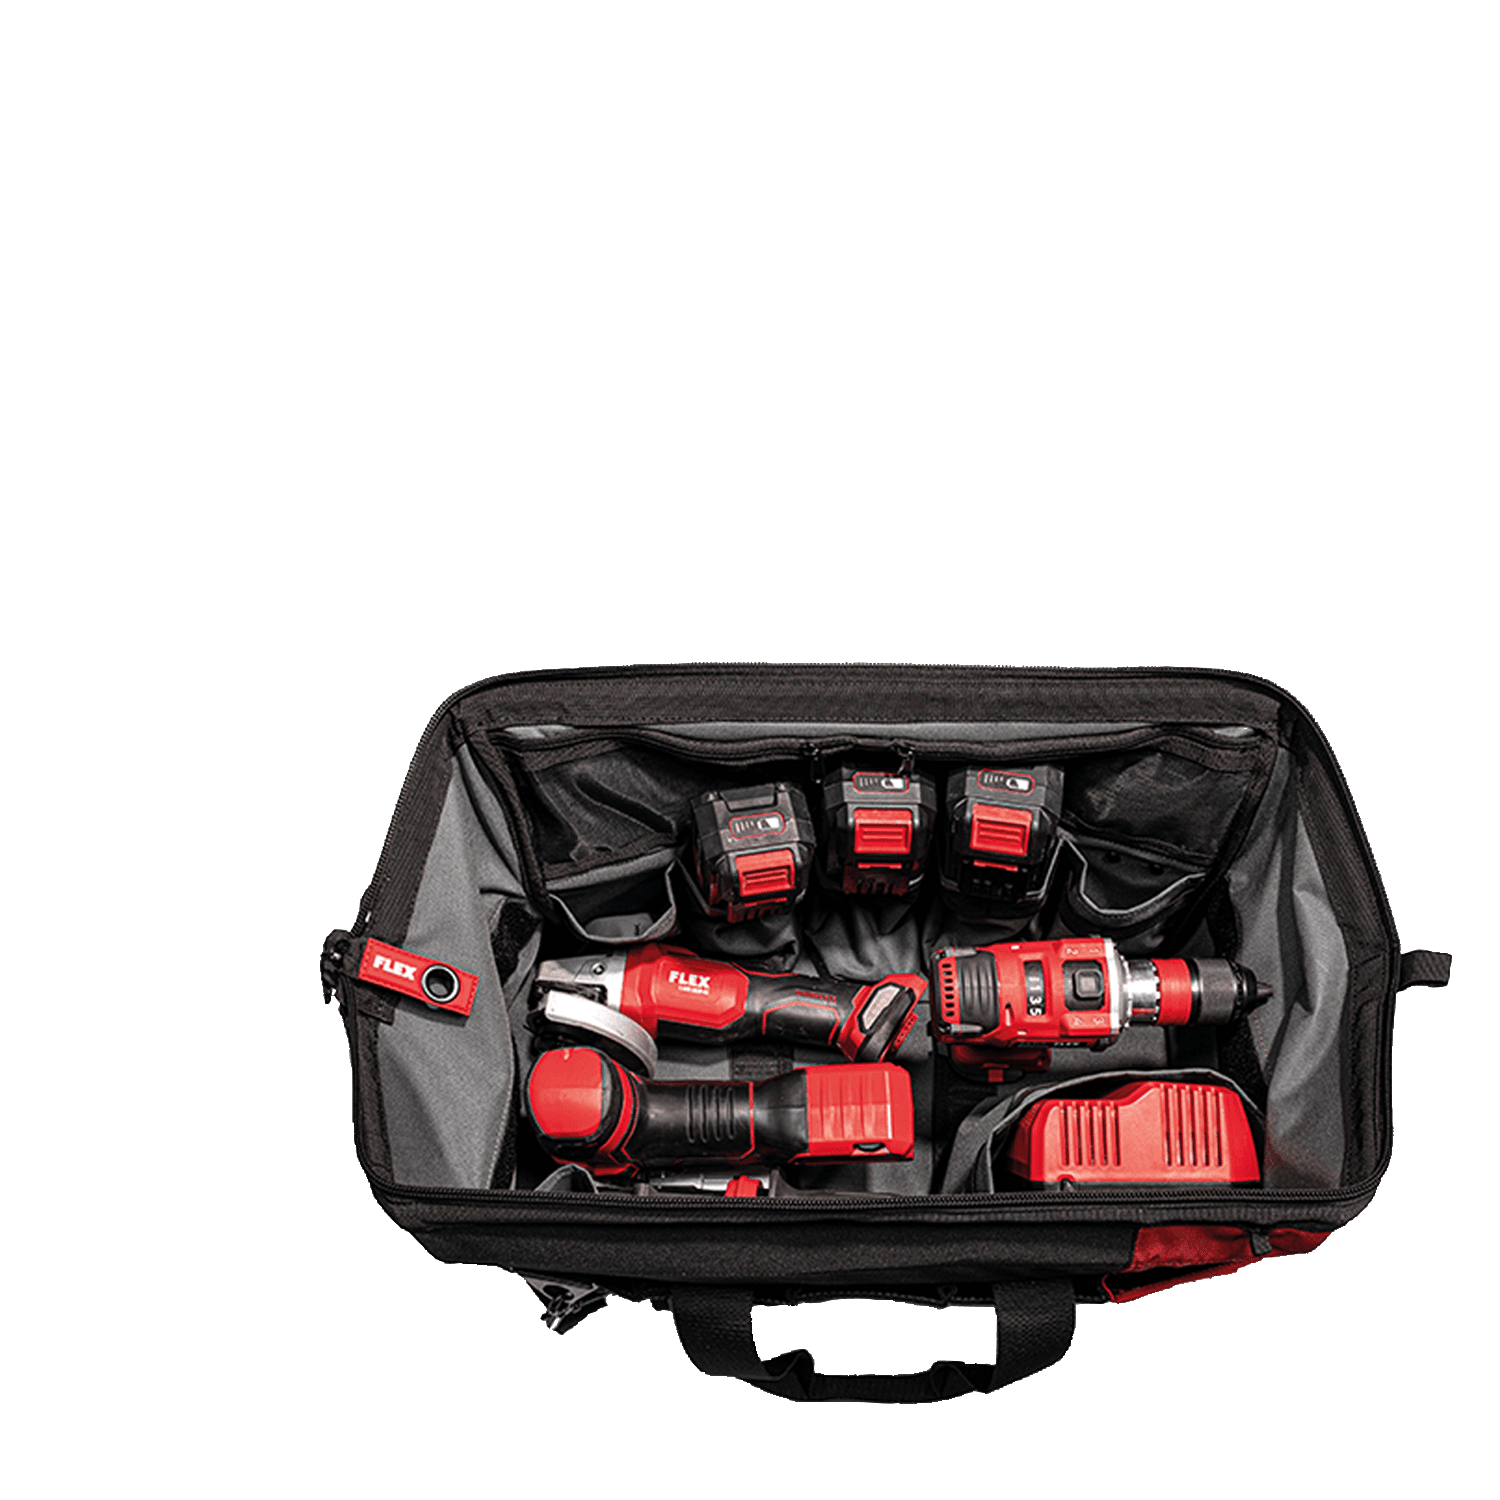 Borsa FLEXPACK con vari elettroutensili a batteria FLEX e caricabatterie